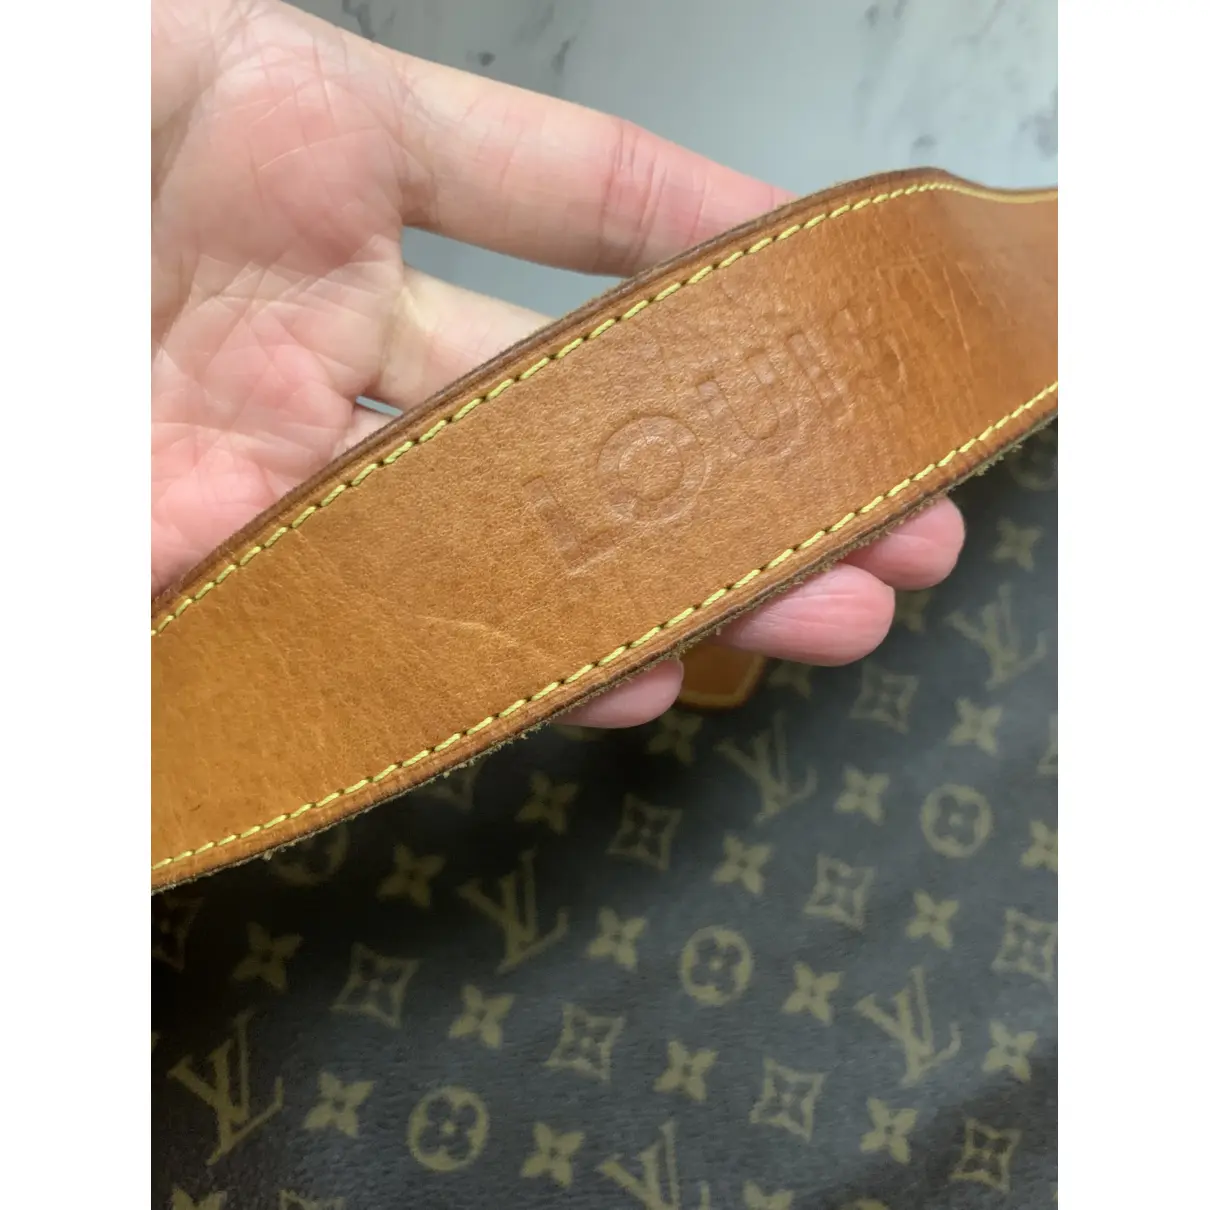 Graceful leather handbag Louis Vuitton